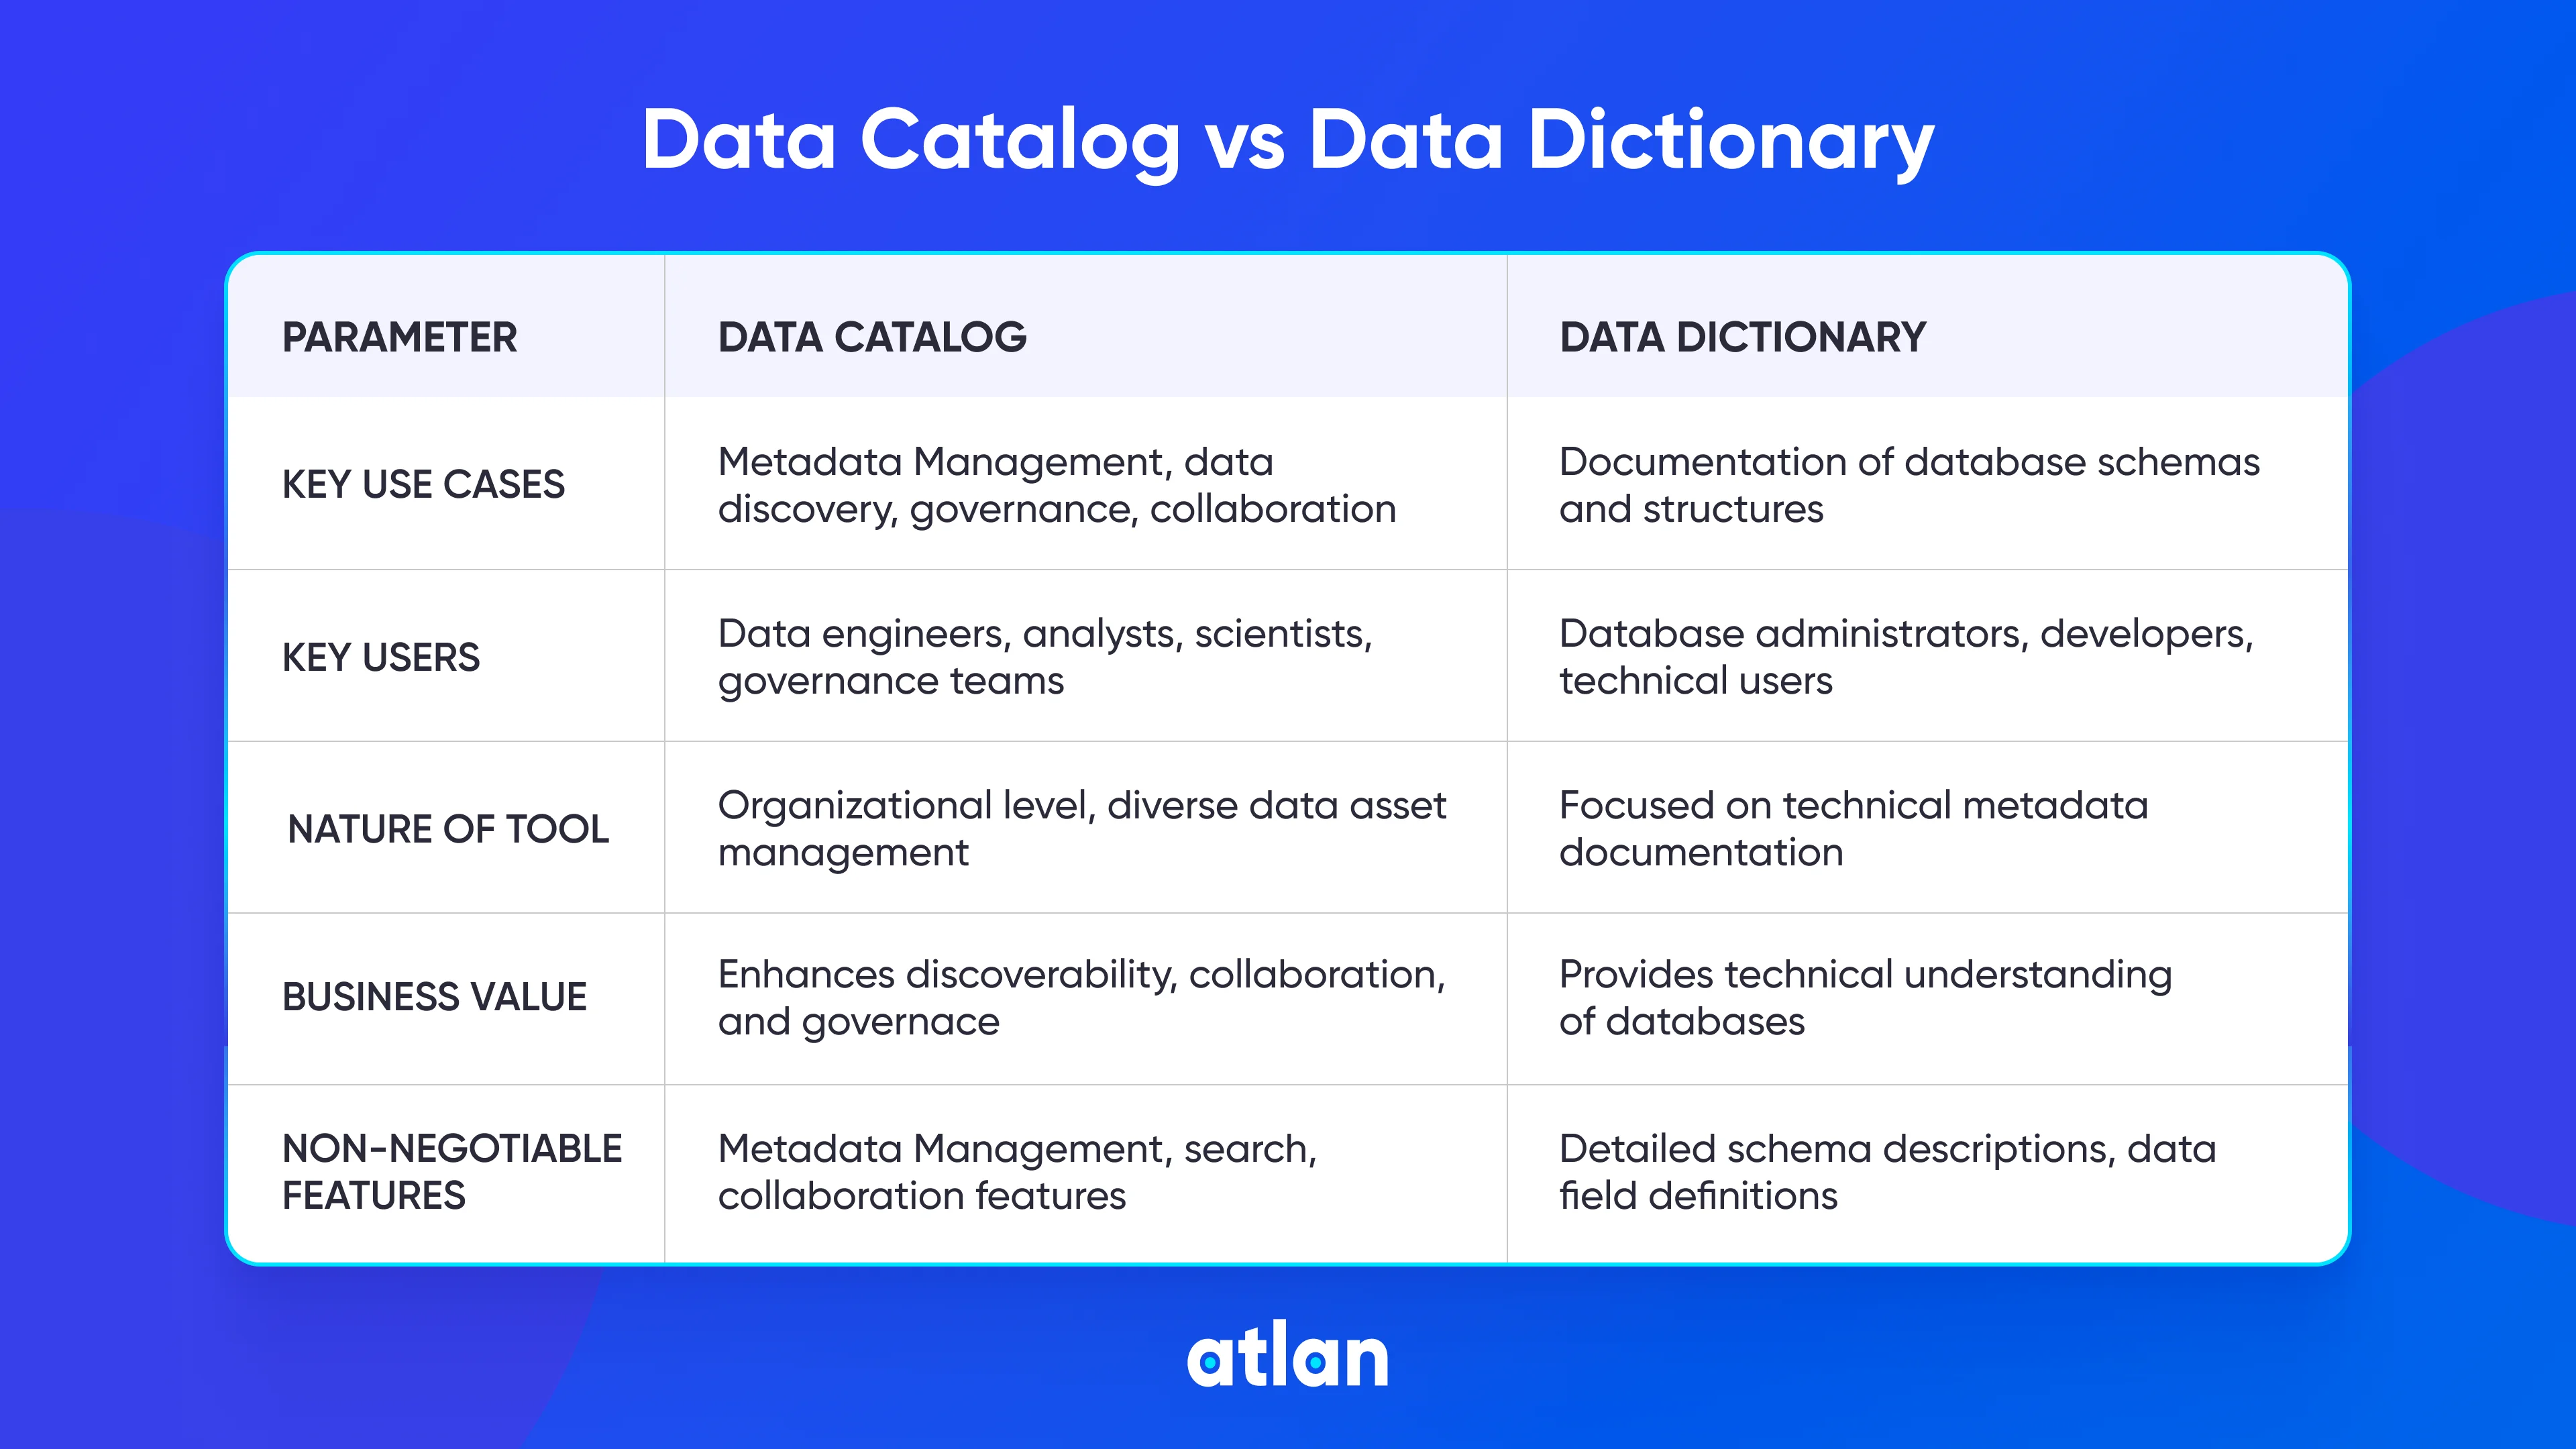 Data catalog vs data dictionary